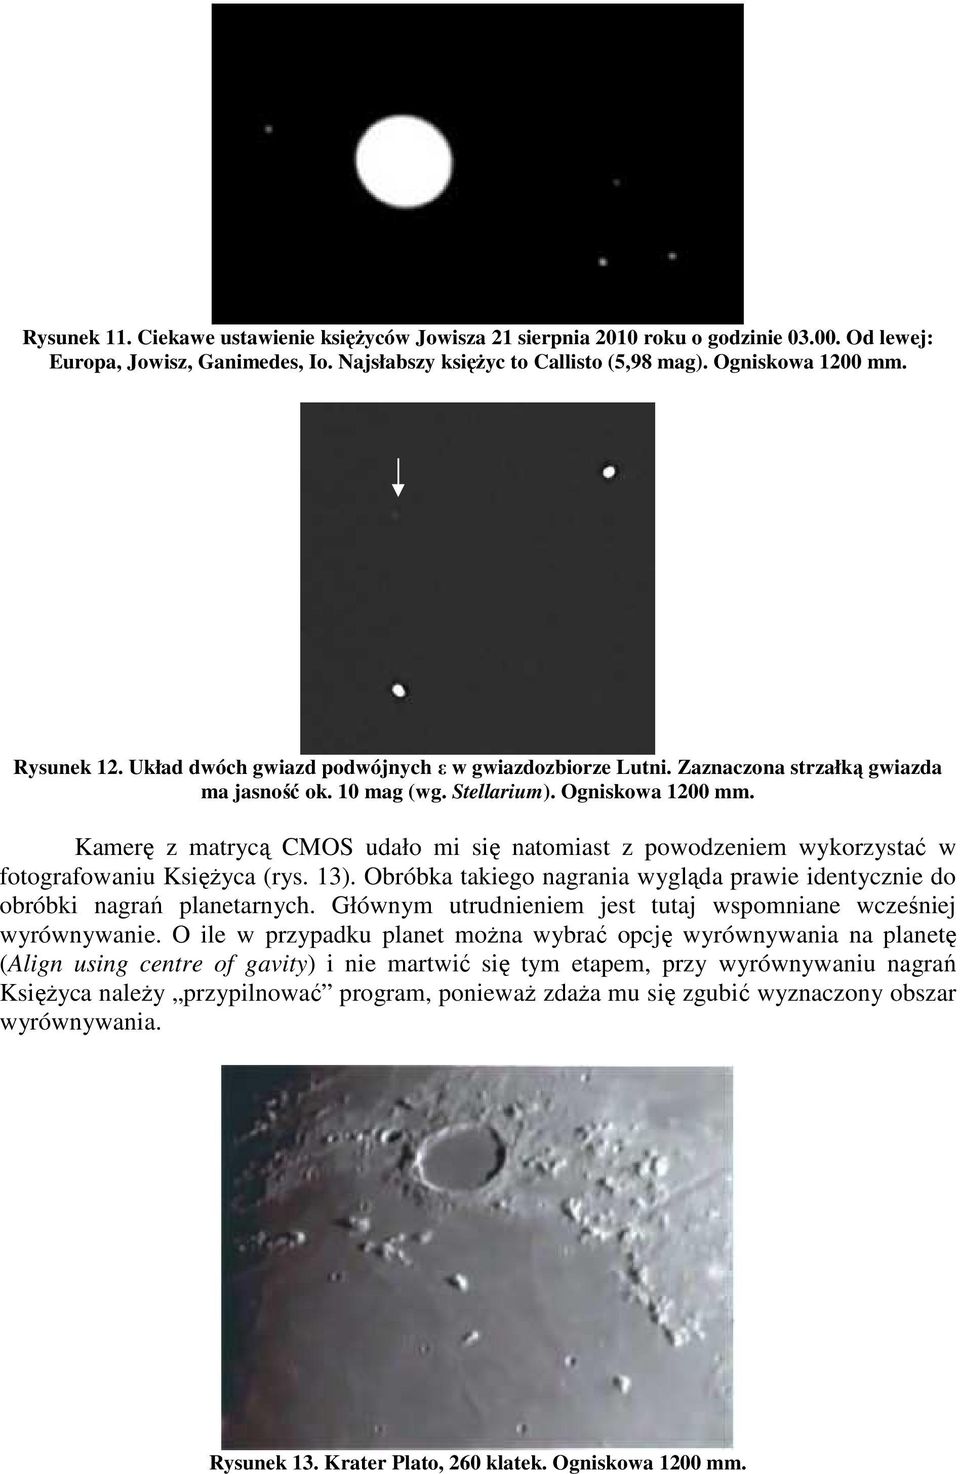 Kamerę z matrycą CMOS udało mi się natomiast z powodzeniem wykorzystać w fotografowaniu Księżyca (rys. 13). Obróbka takiego nagrania wygląda prawie identycznie do obróbki nagrań planetarnych.